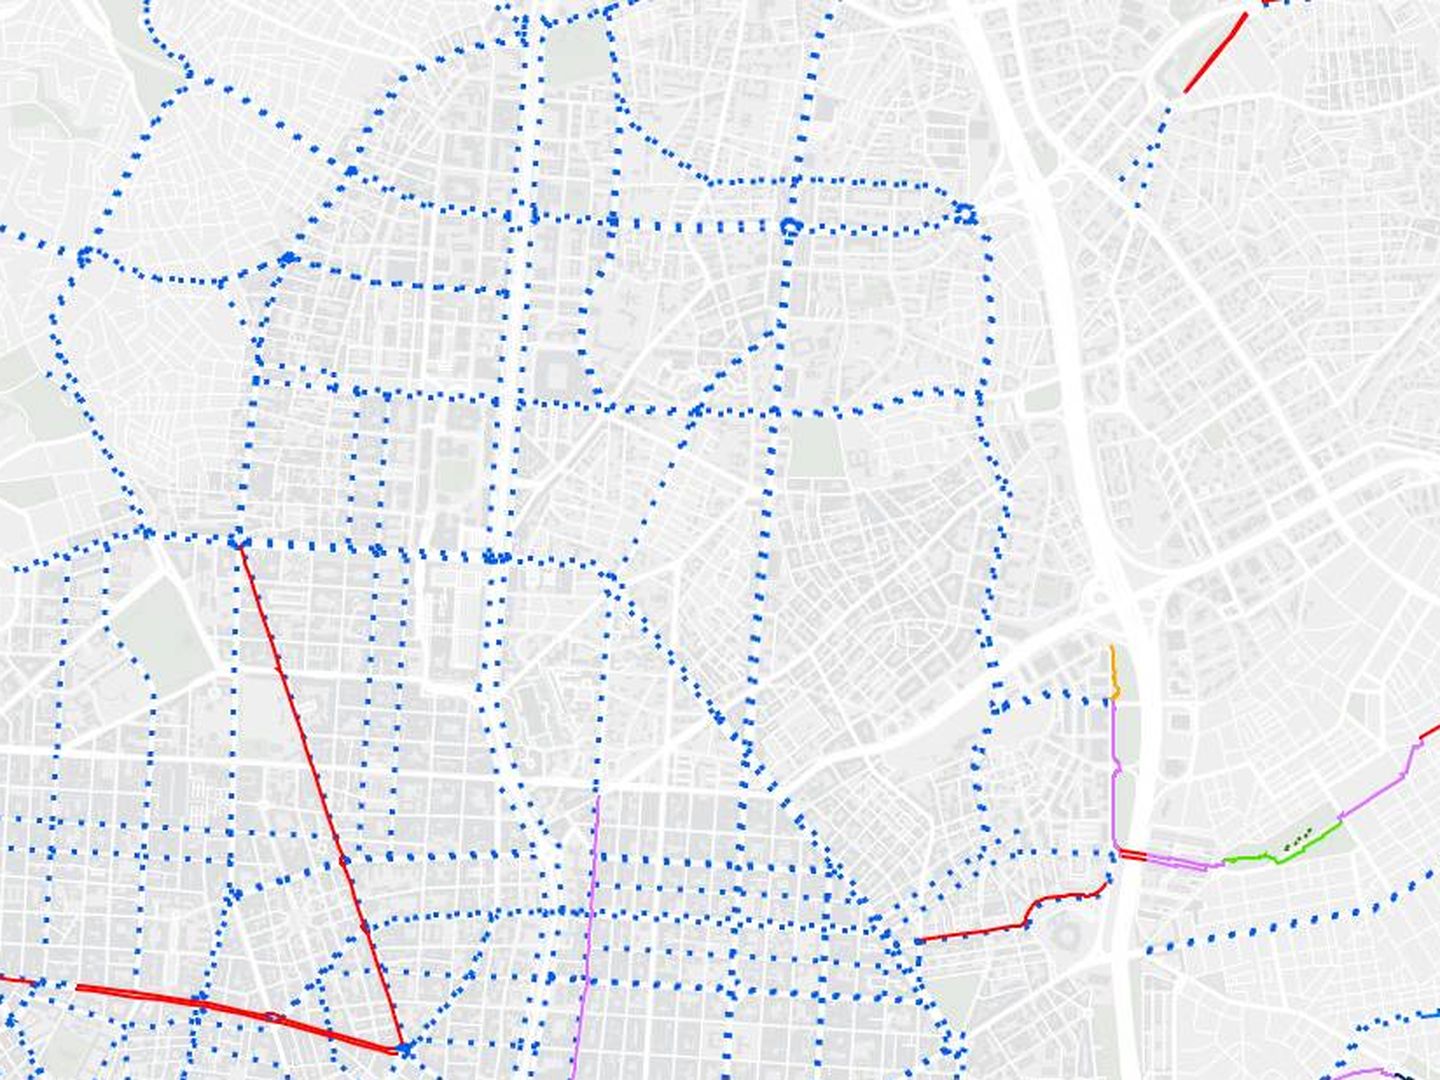 La misma ruta en el Mapa de la bici del Ayuntamiento de Madrid. En rojo el carril bici segregado, en puntos azules los ciclocarriles.